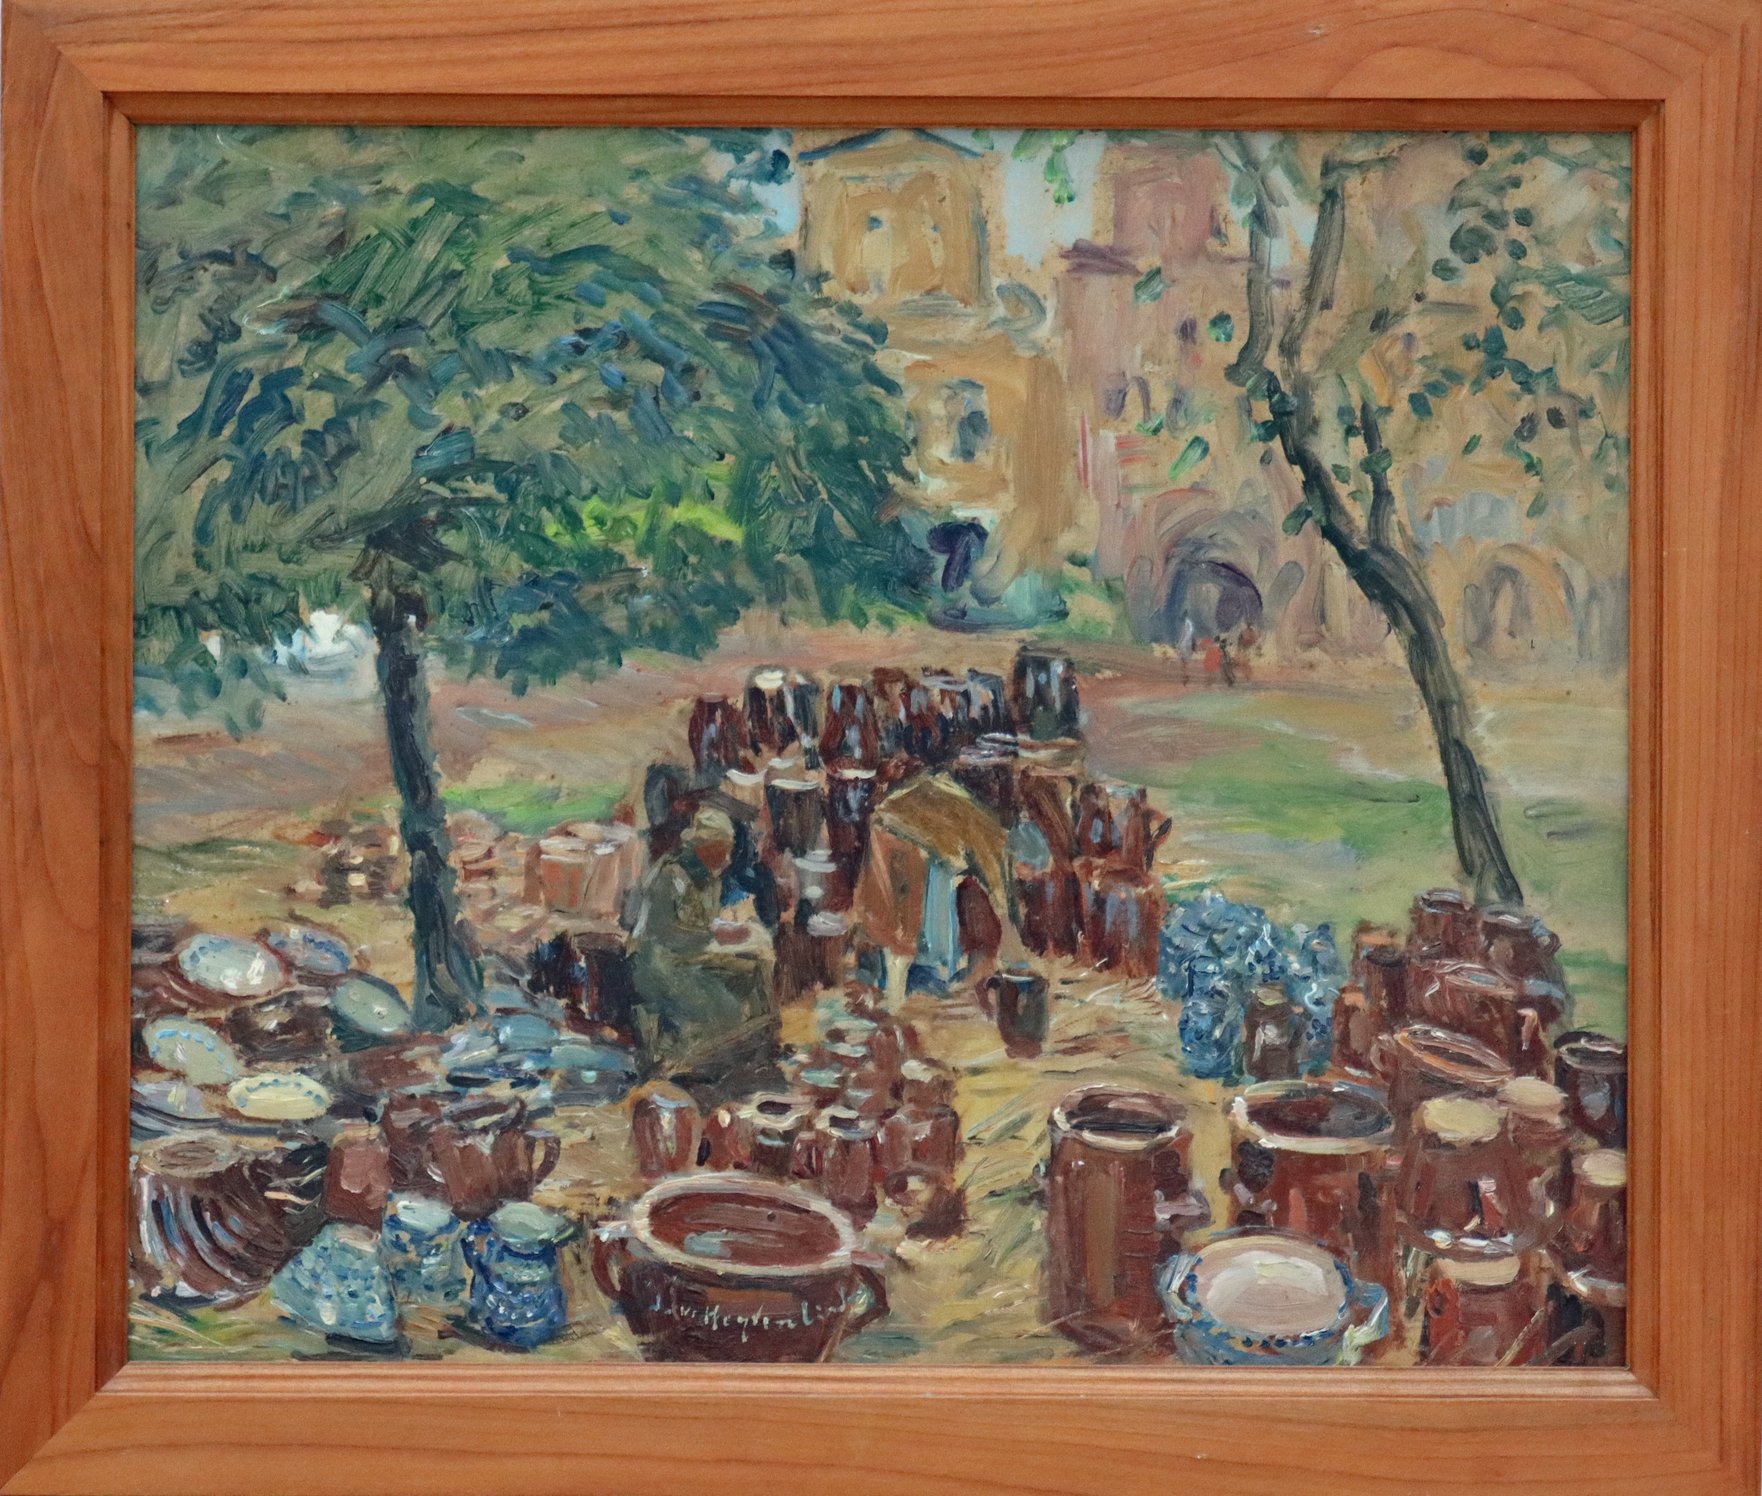 Ilse von Heyden-Linden, Bunzlauer Töpfermarkt, Öl auf Hartfaser, um 1931/32 (1934)